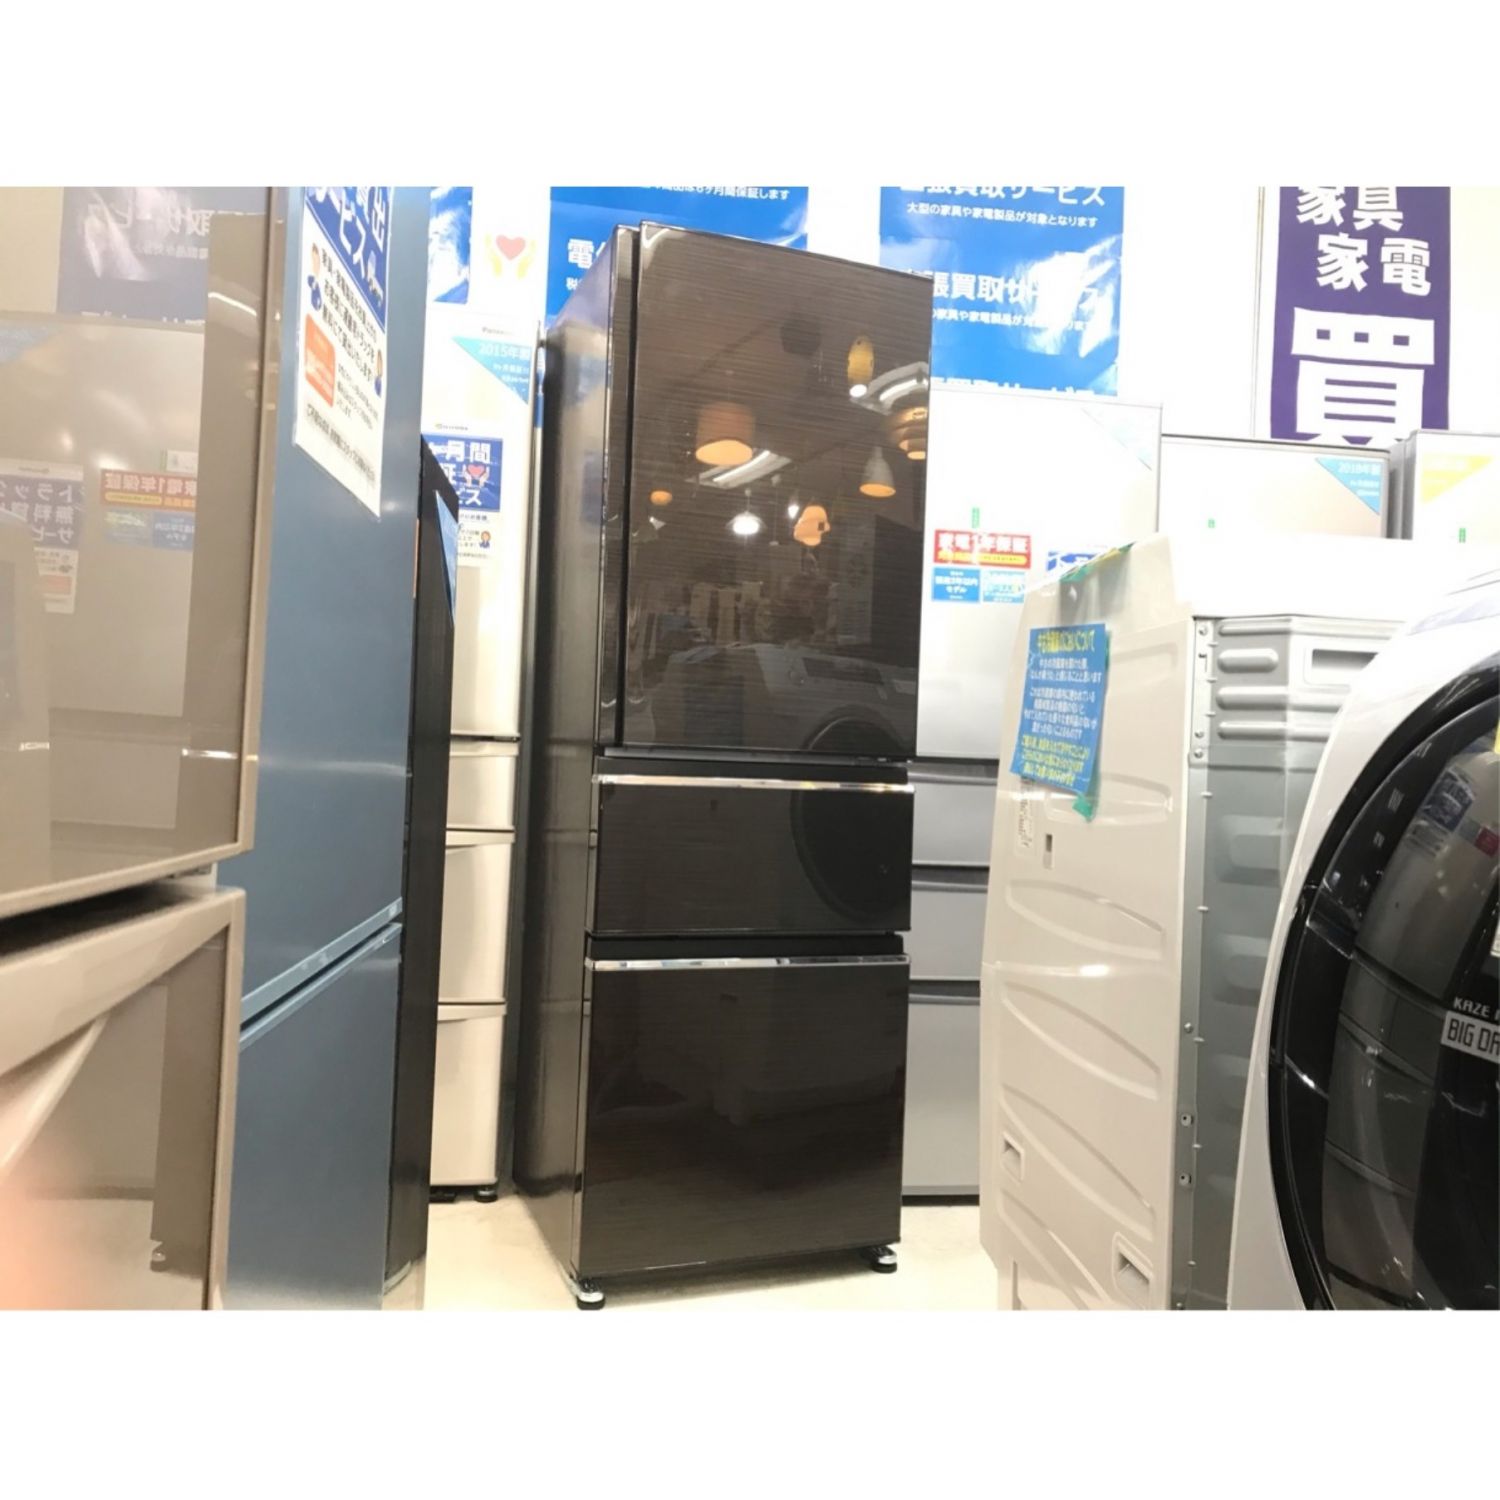 木目 大型冷蔵庫 自動製氷機能 21年 三菱 3ドア MR-CX37F 365L冷凍庫